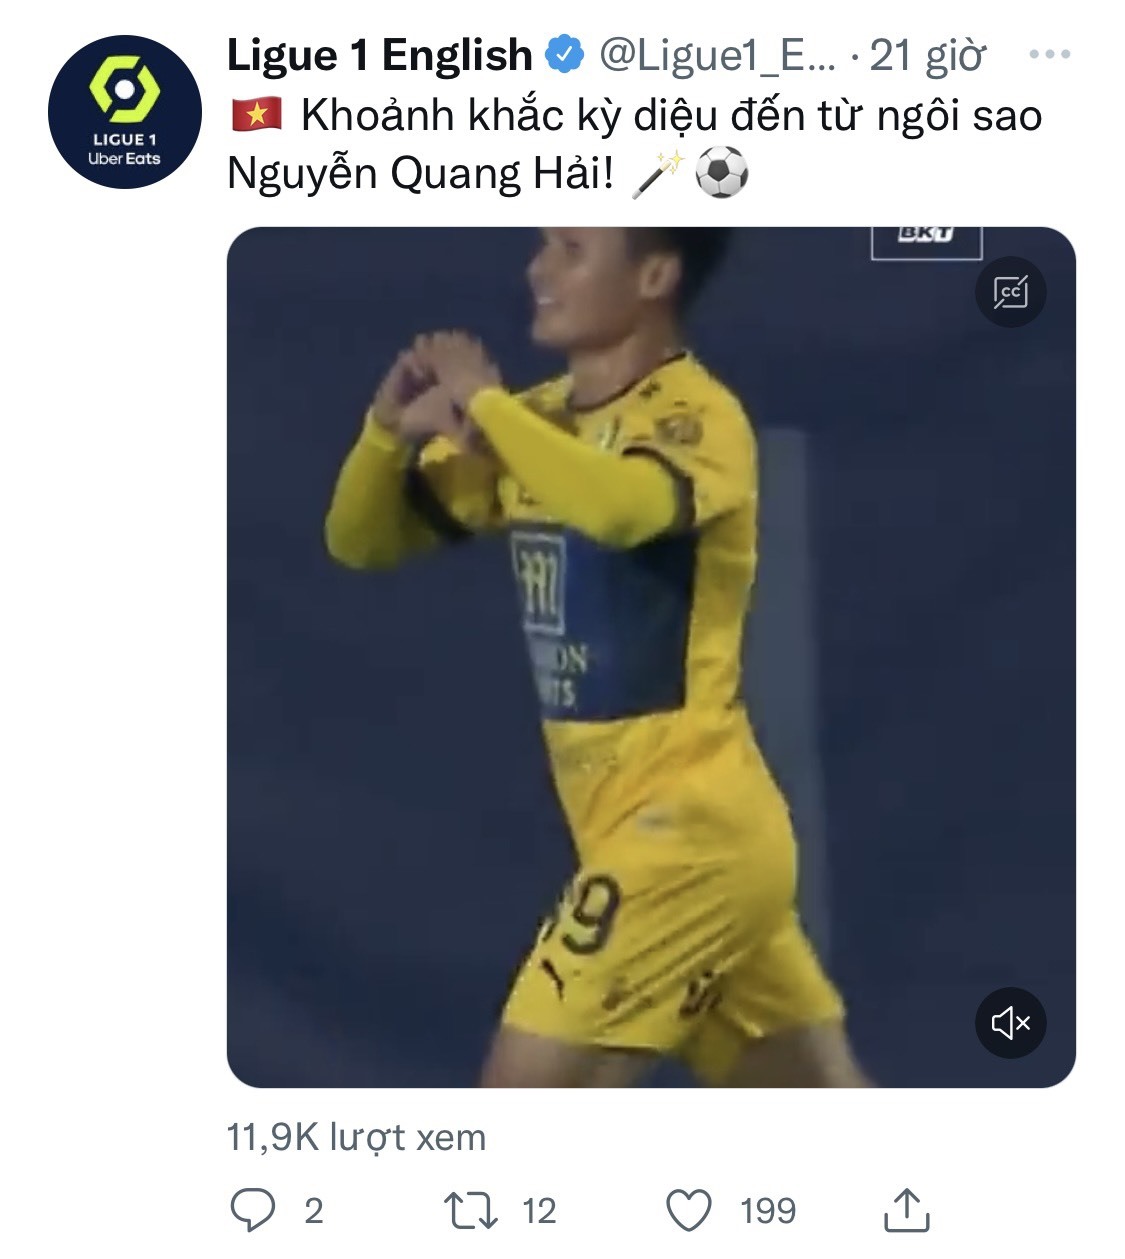 QUang Hải nhận vinh dự từ Ligue 1. Ảnh: CMH